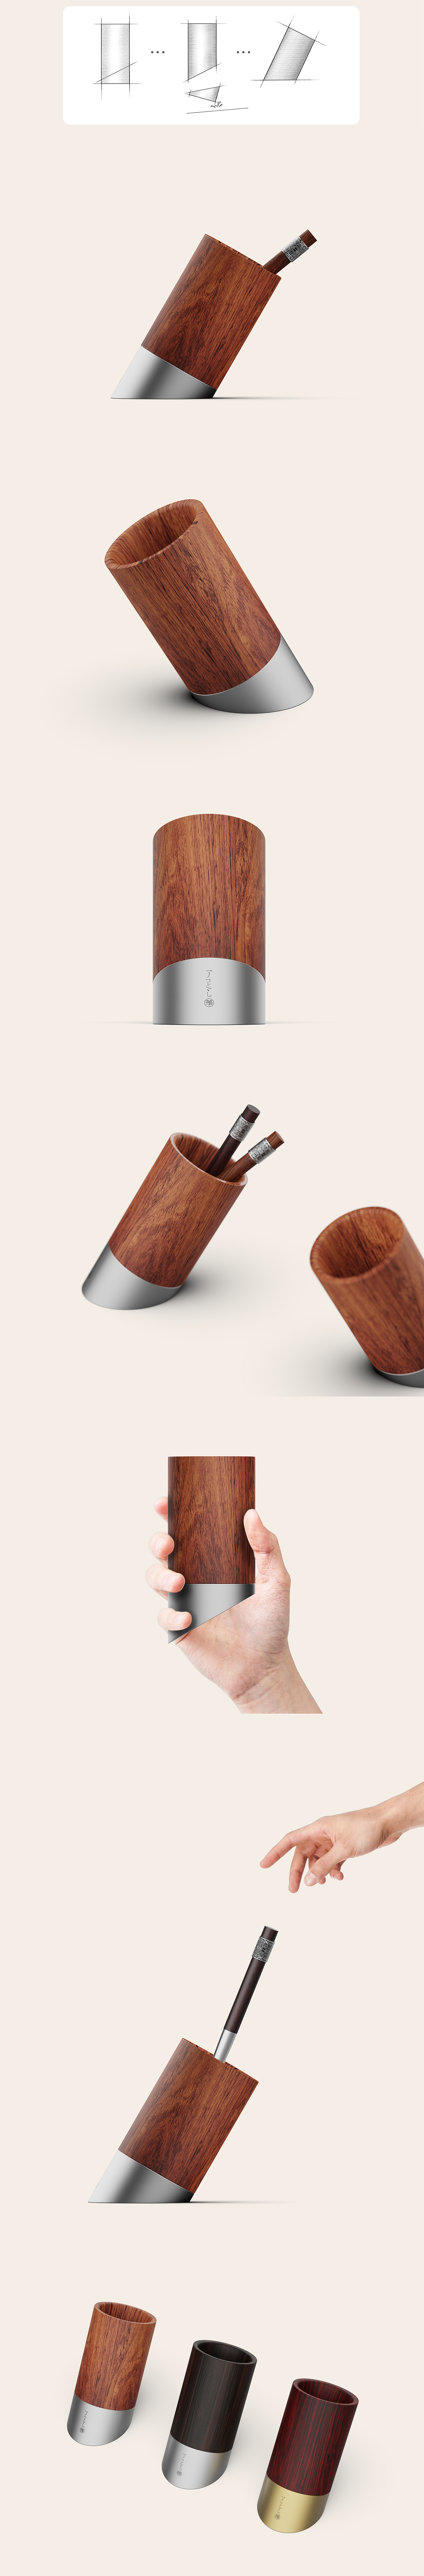 笔筒，倾斜式笔筒，不锈钢，木头花梨木胡桃木，产品设计，笔下文创，文创产品，